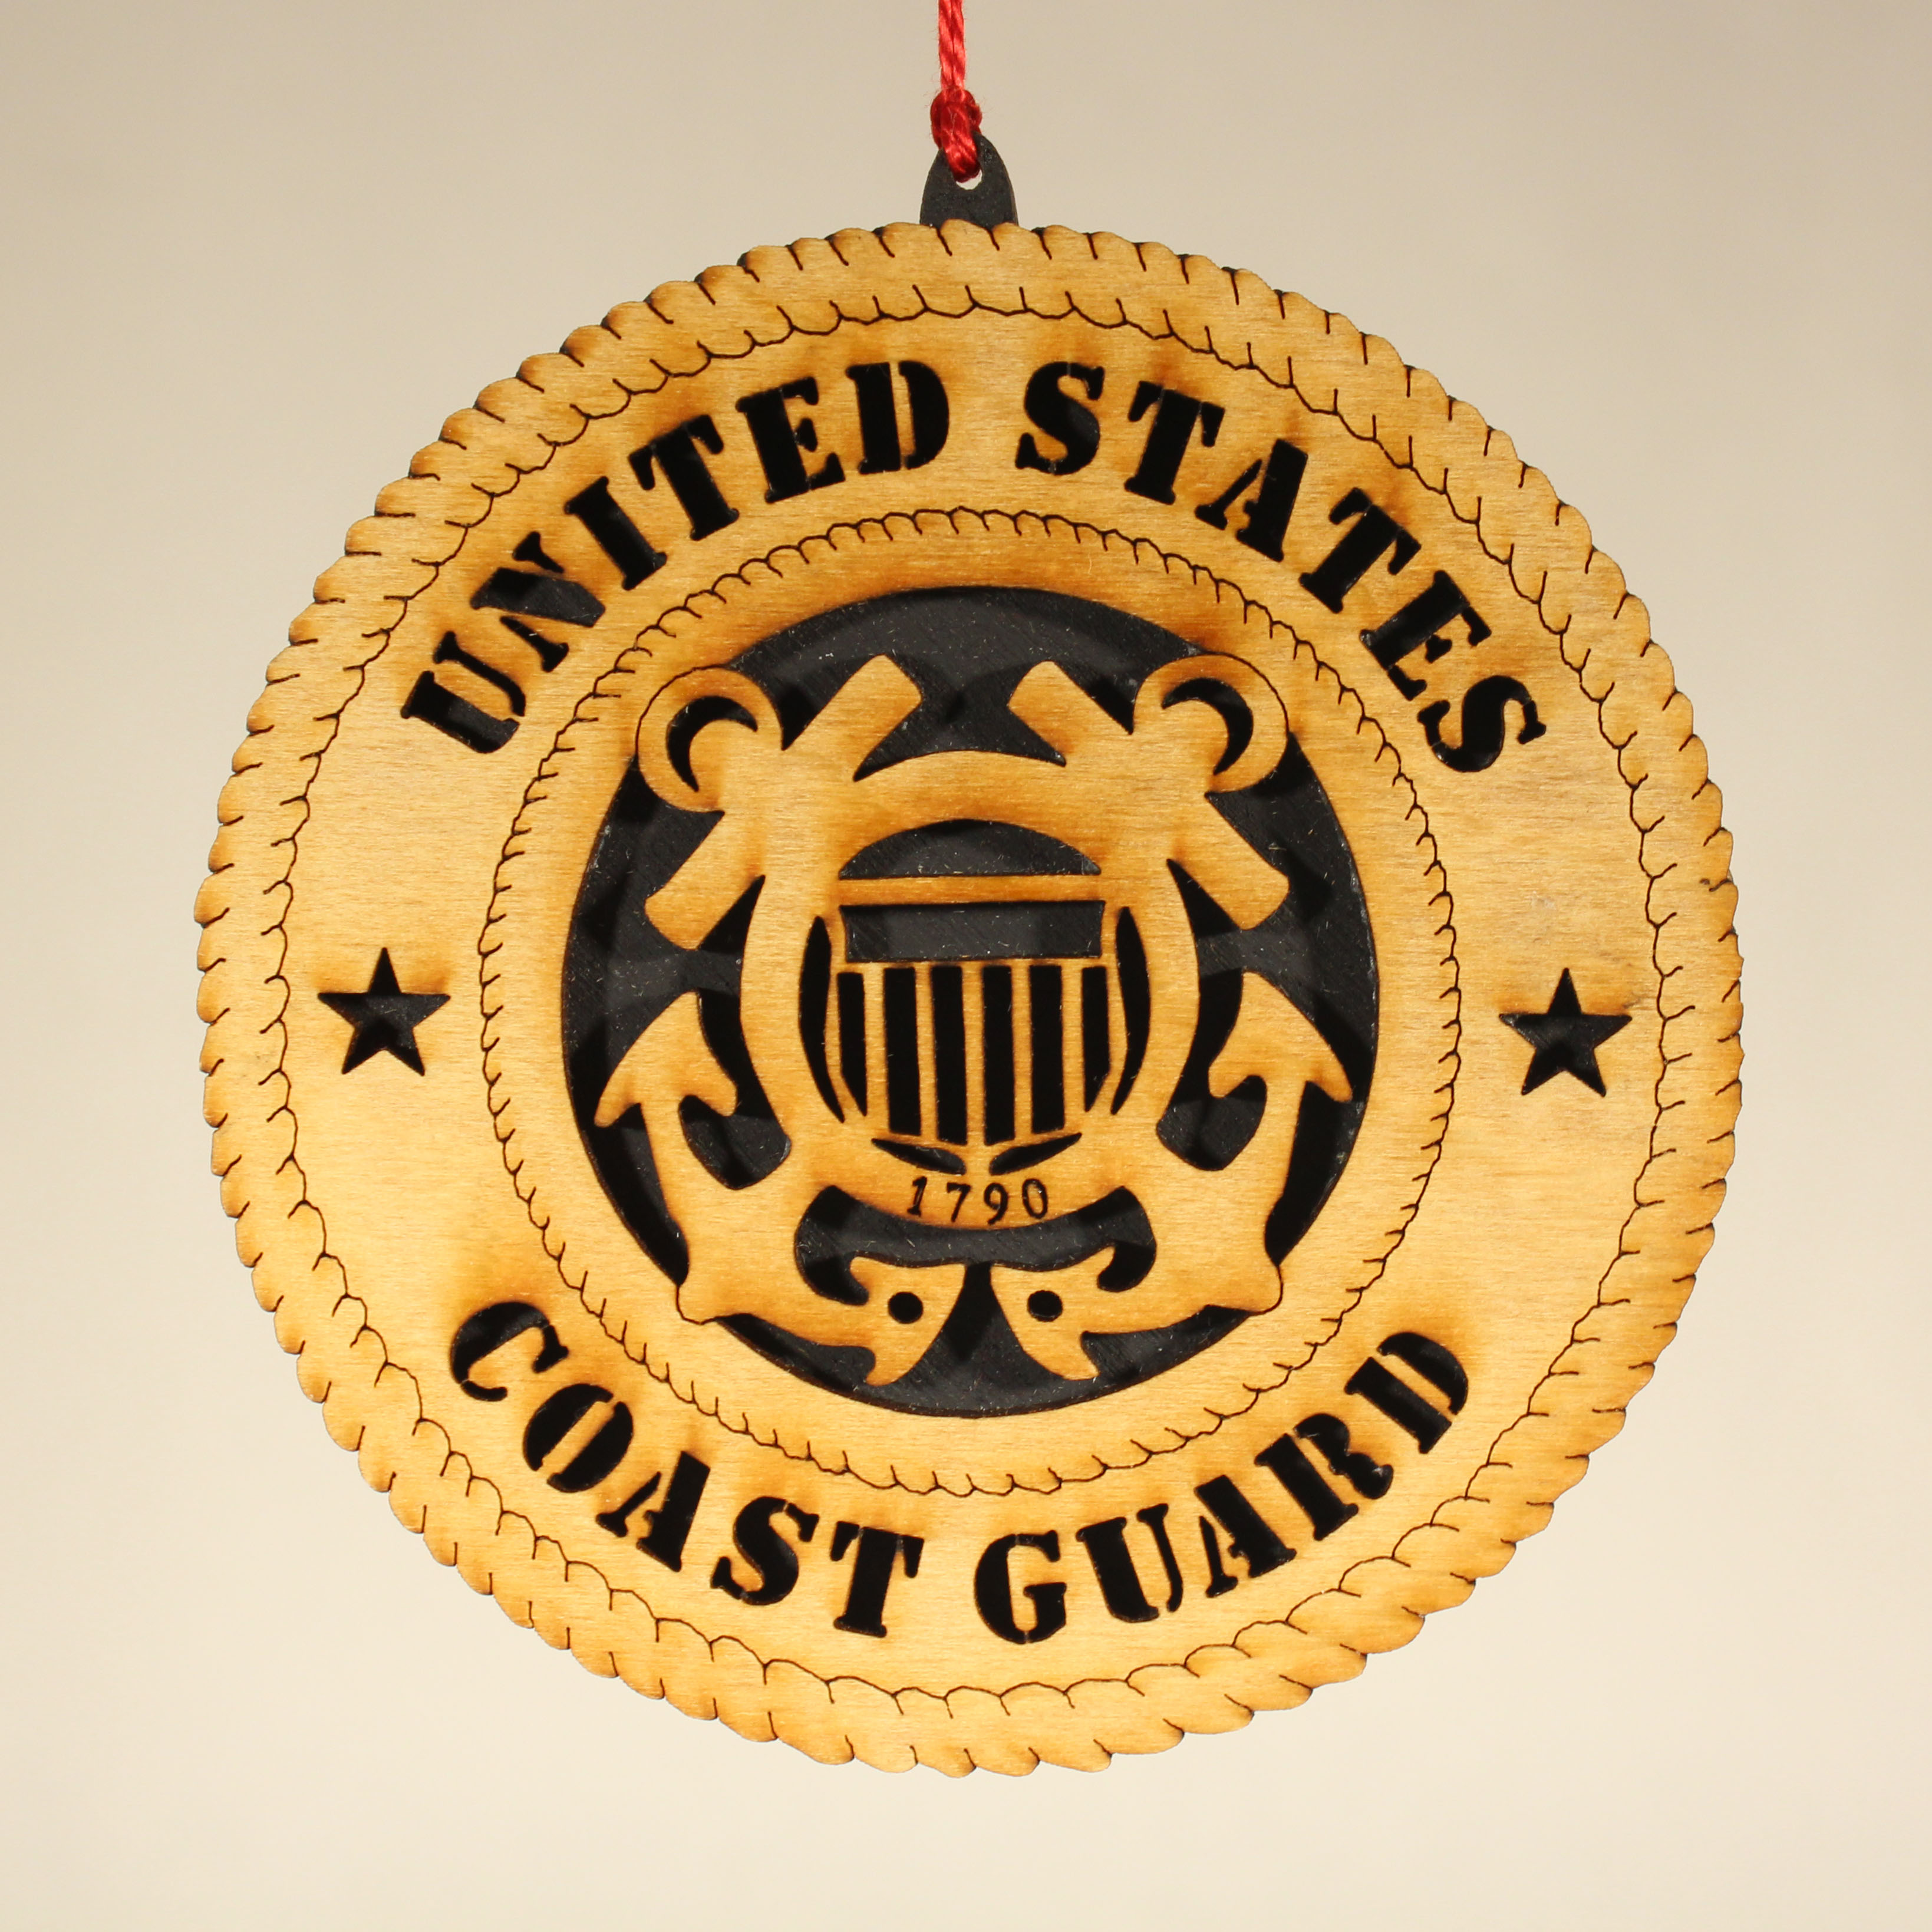 Military Coast Guard Ornament USA